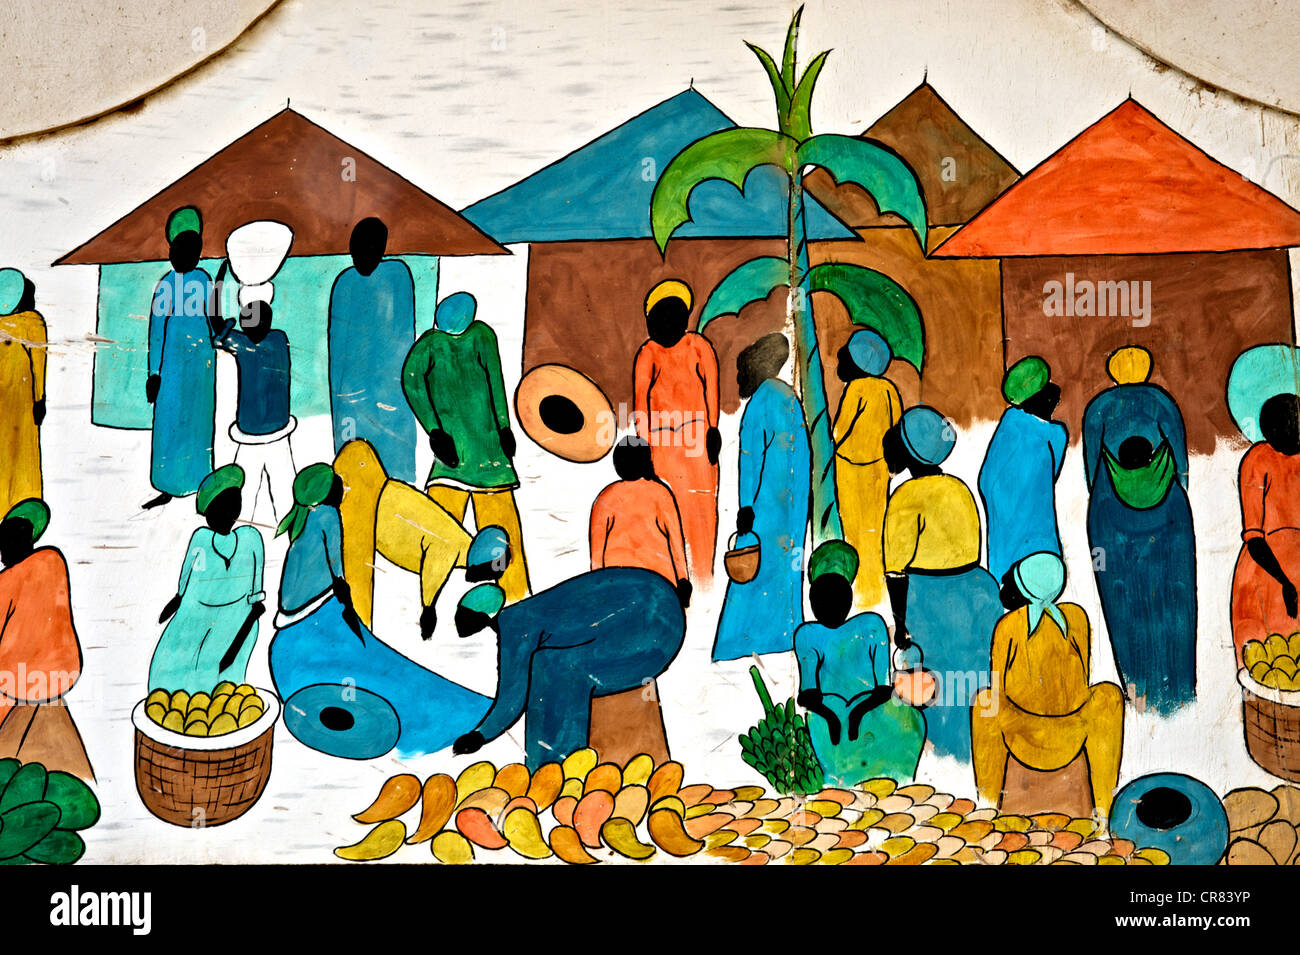 Detalles artísticos de coloridos dibujo que representa la vida africana Foto de stock